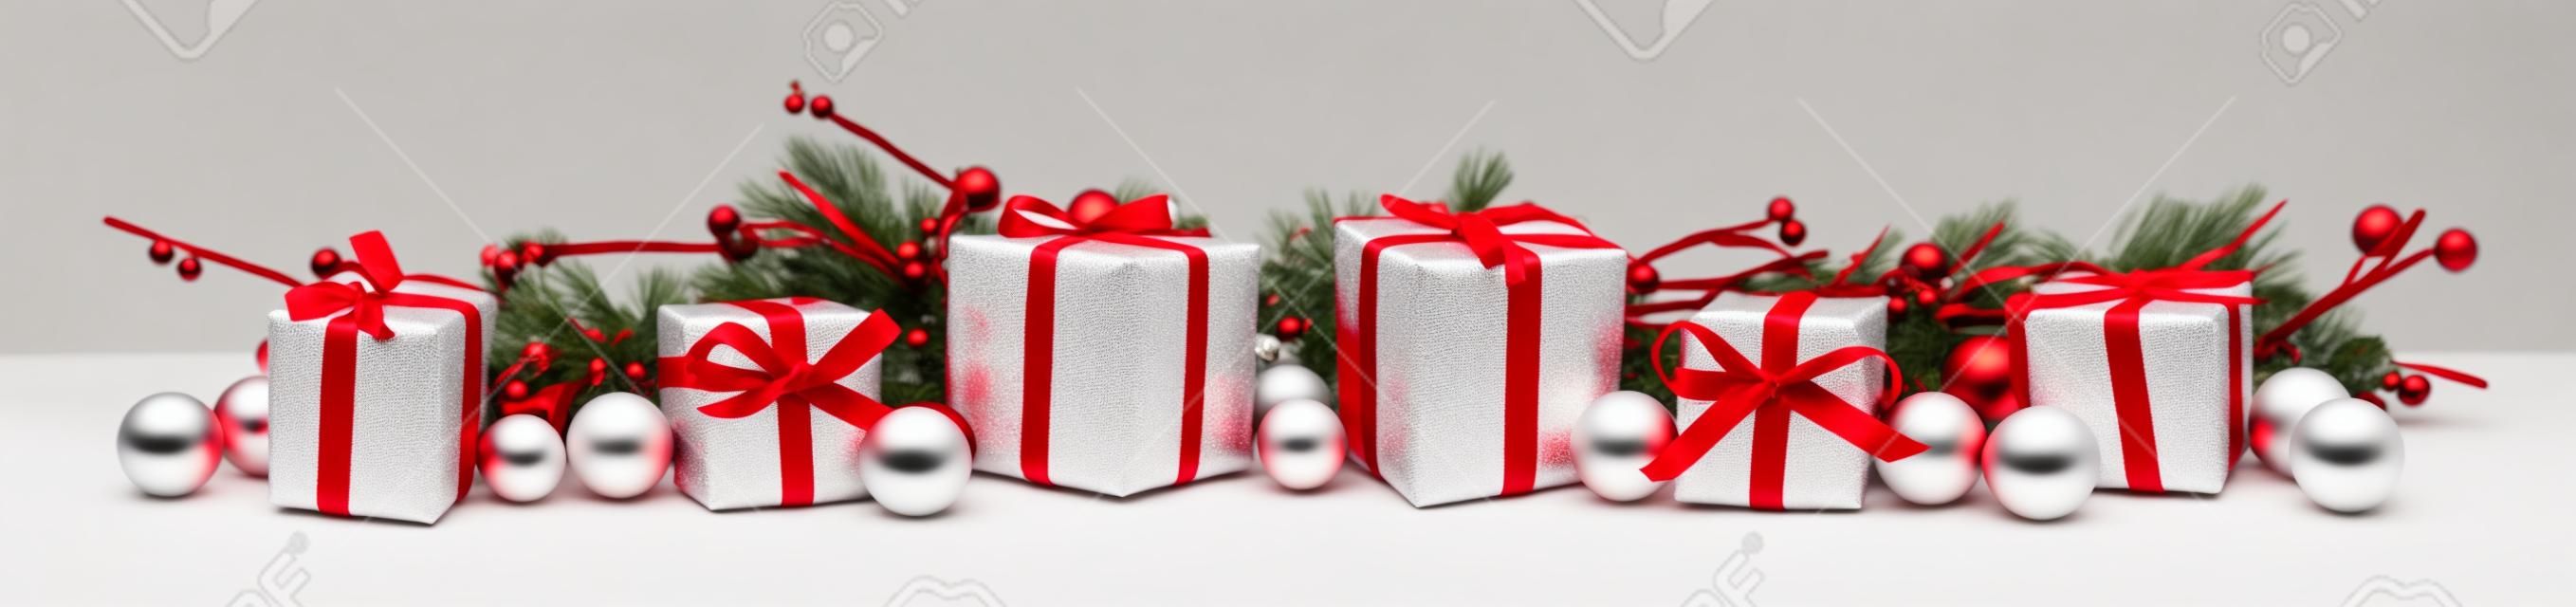 Christmas border des branches et des cadeaux rouges et blanches sur un fond blanc